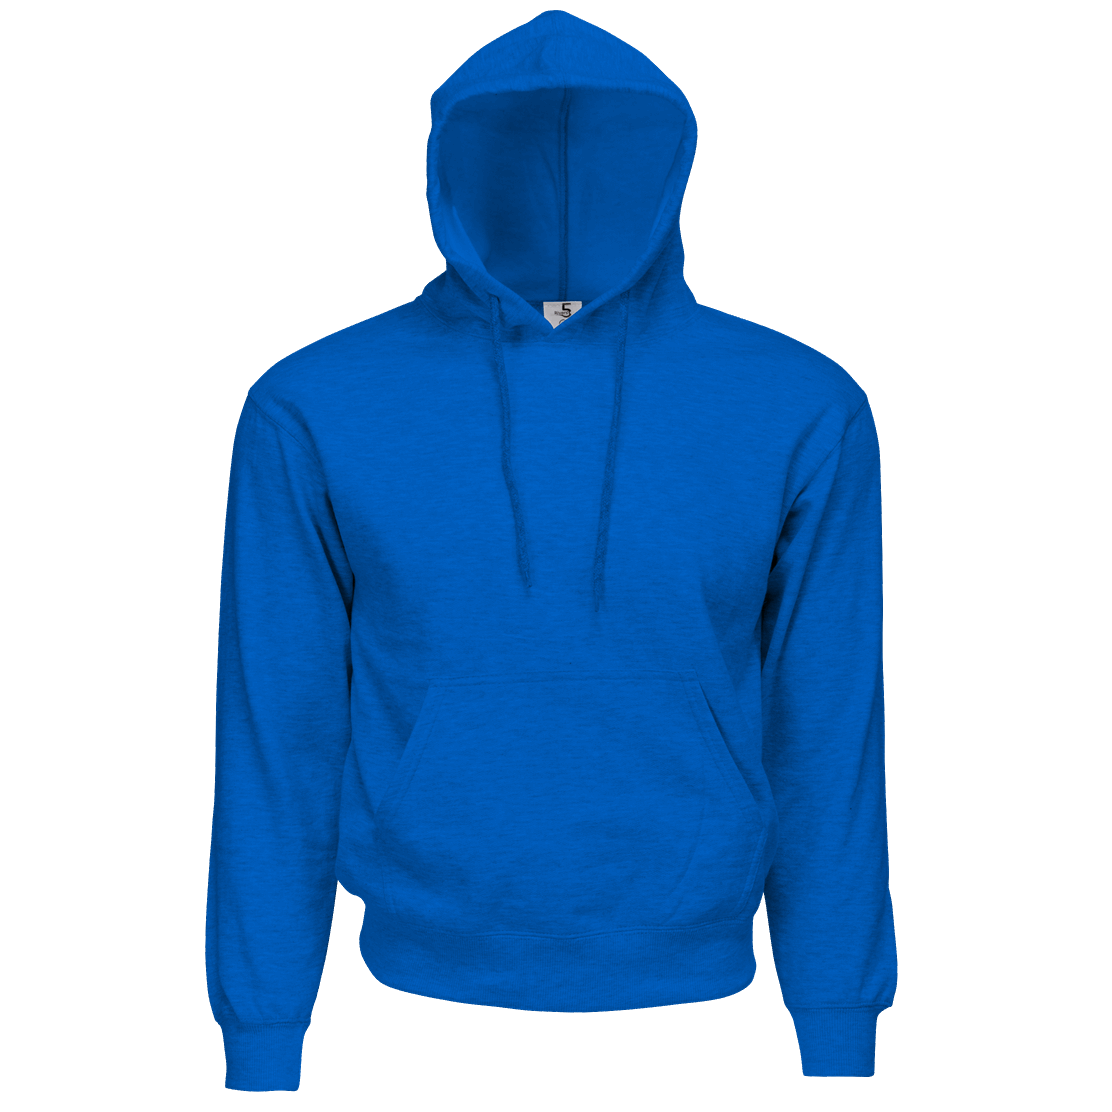 Download Jacket clipart blue hoodie, Jacket blue hoodie Transparent ...